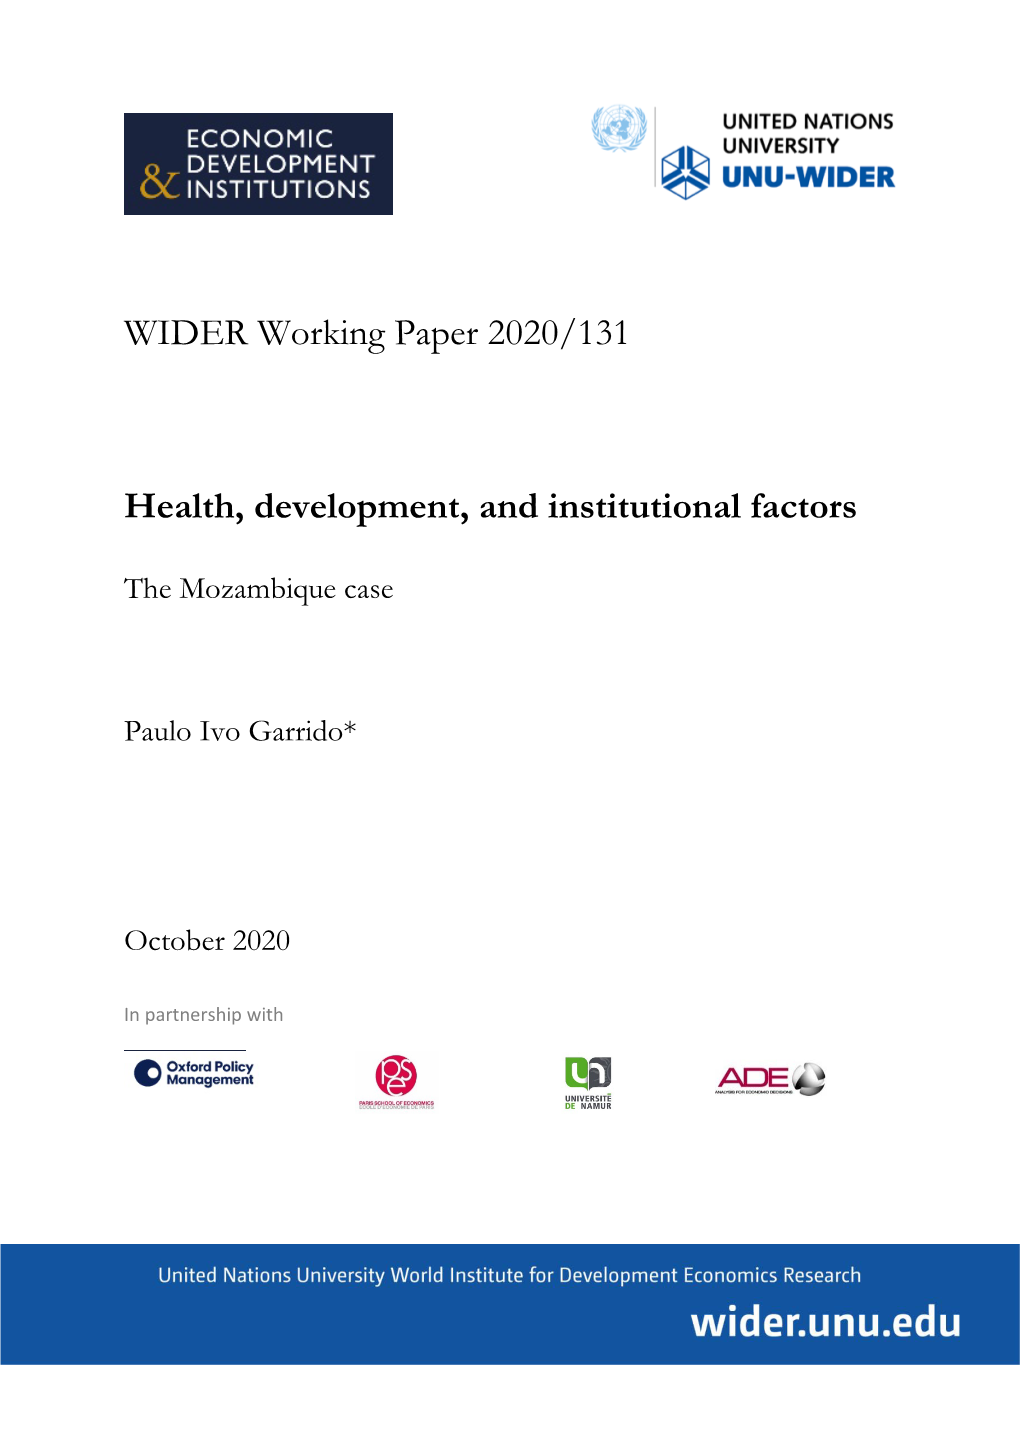 WIDER Working Paper 2020/131-Health, Development